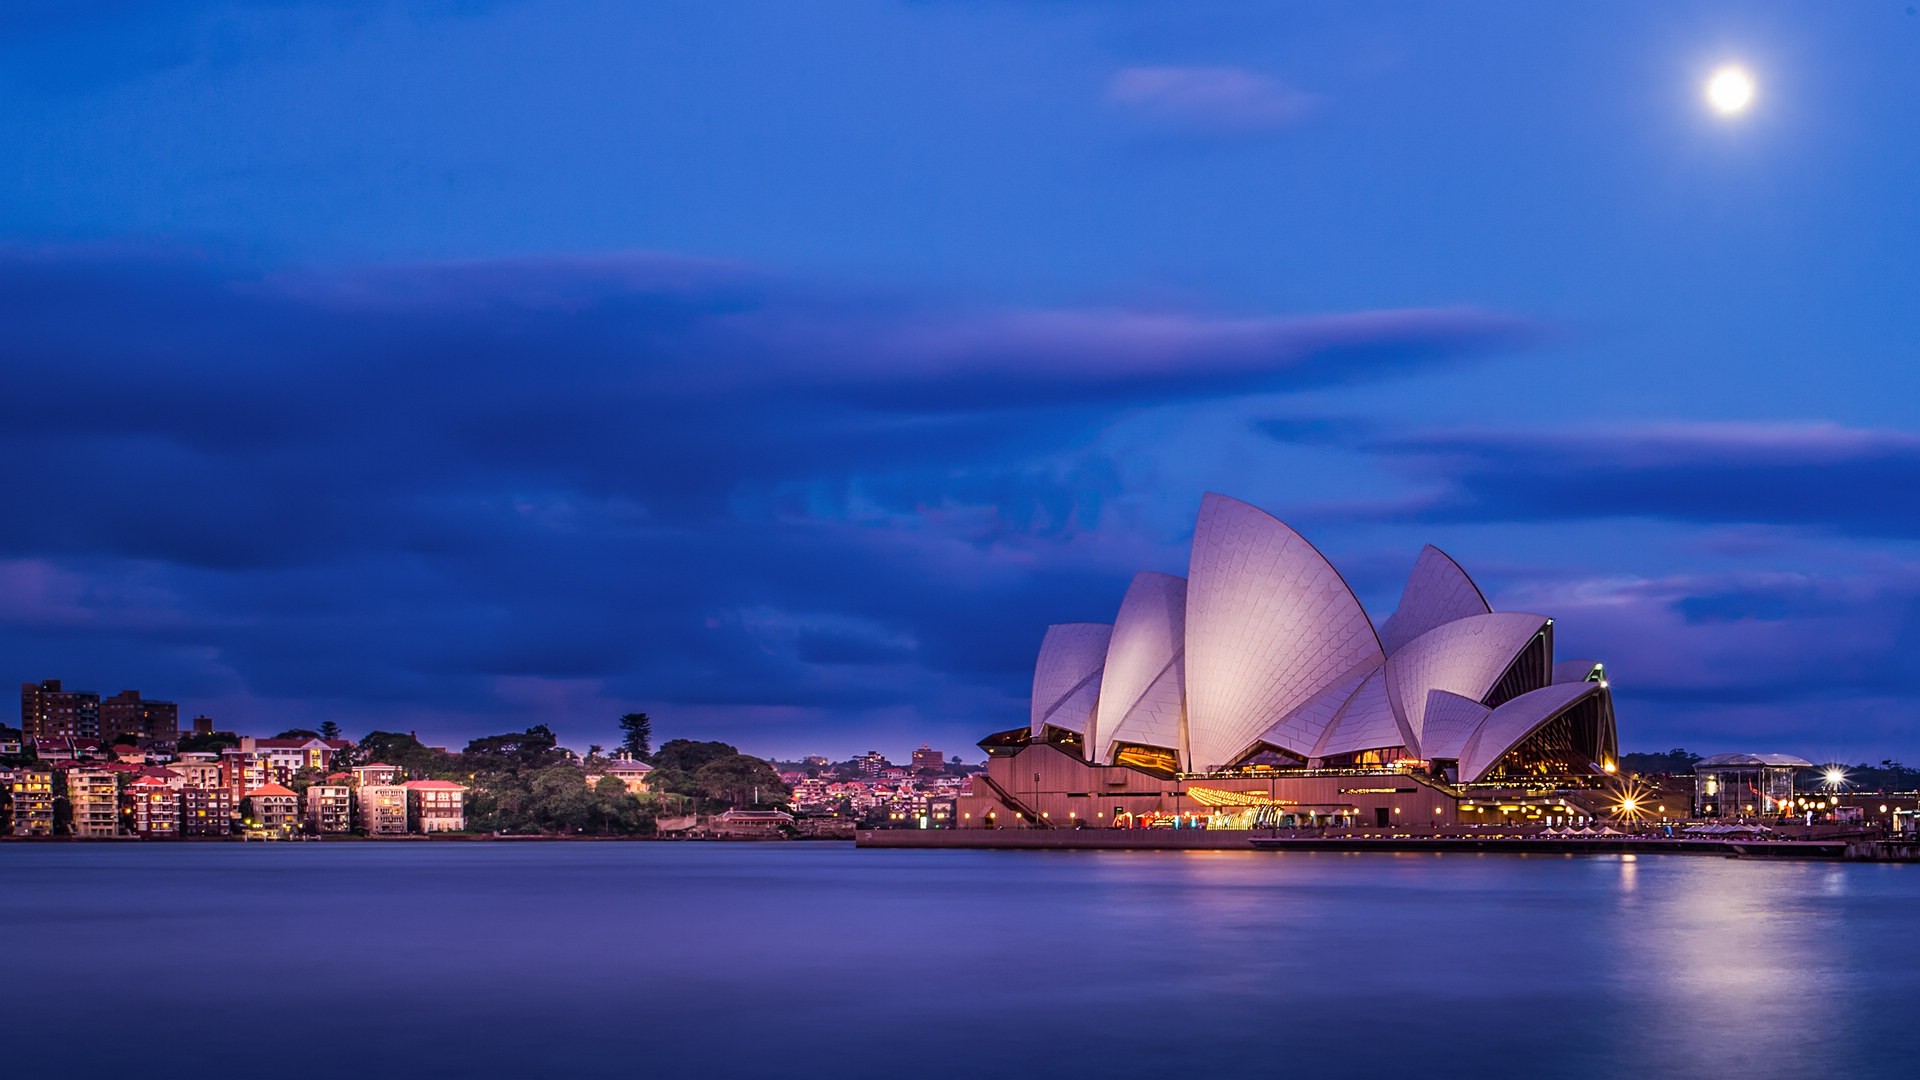 悉尼歌剧院图片大全 澳大利亚悉尼歌剧院图片(7)